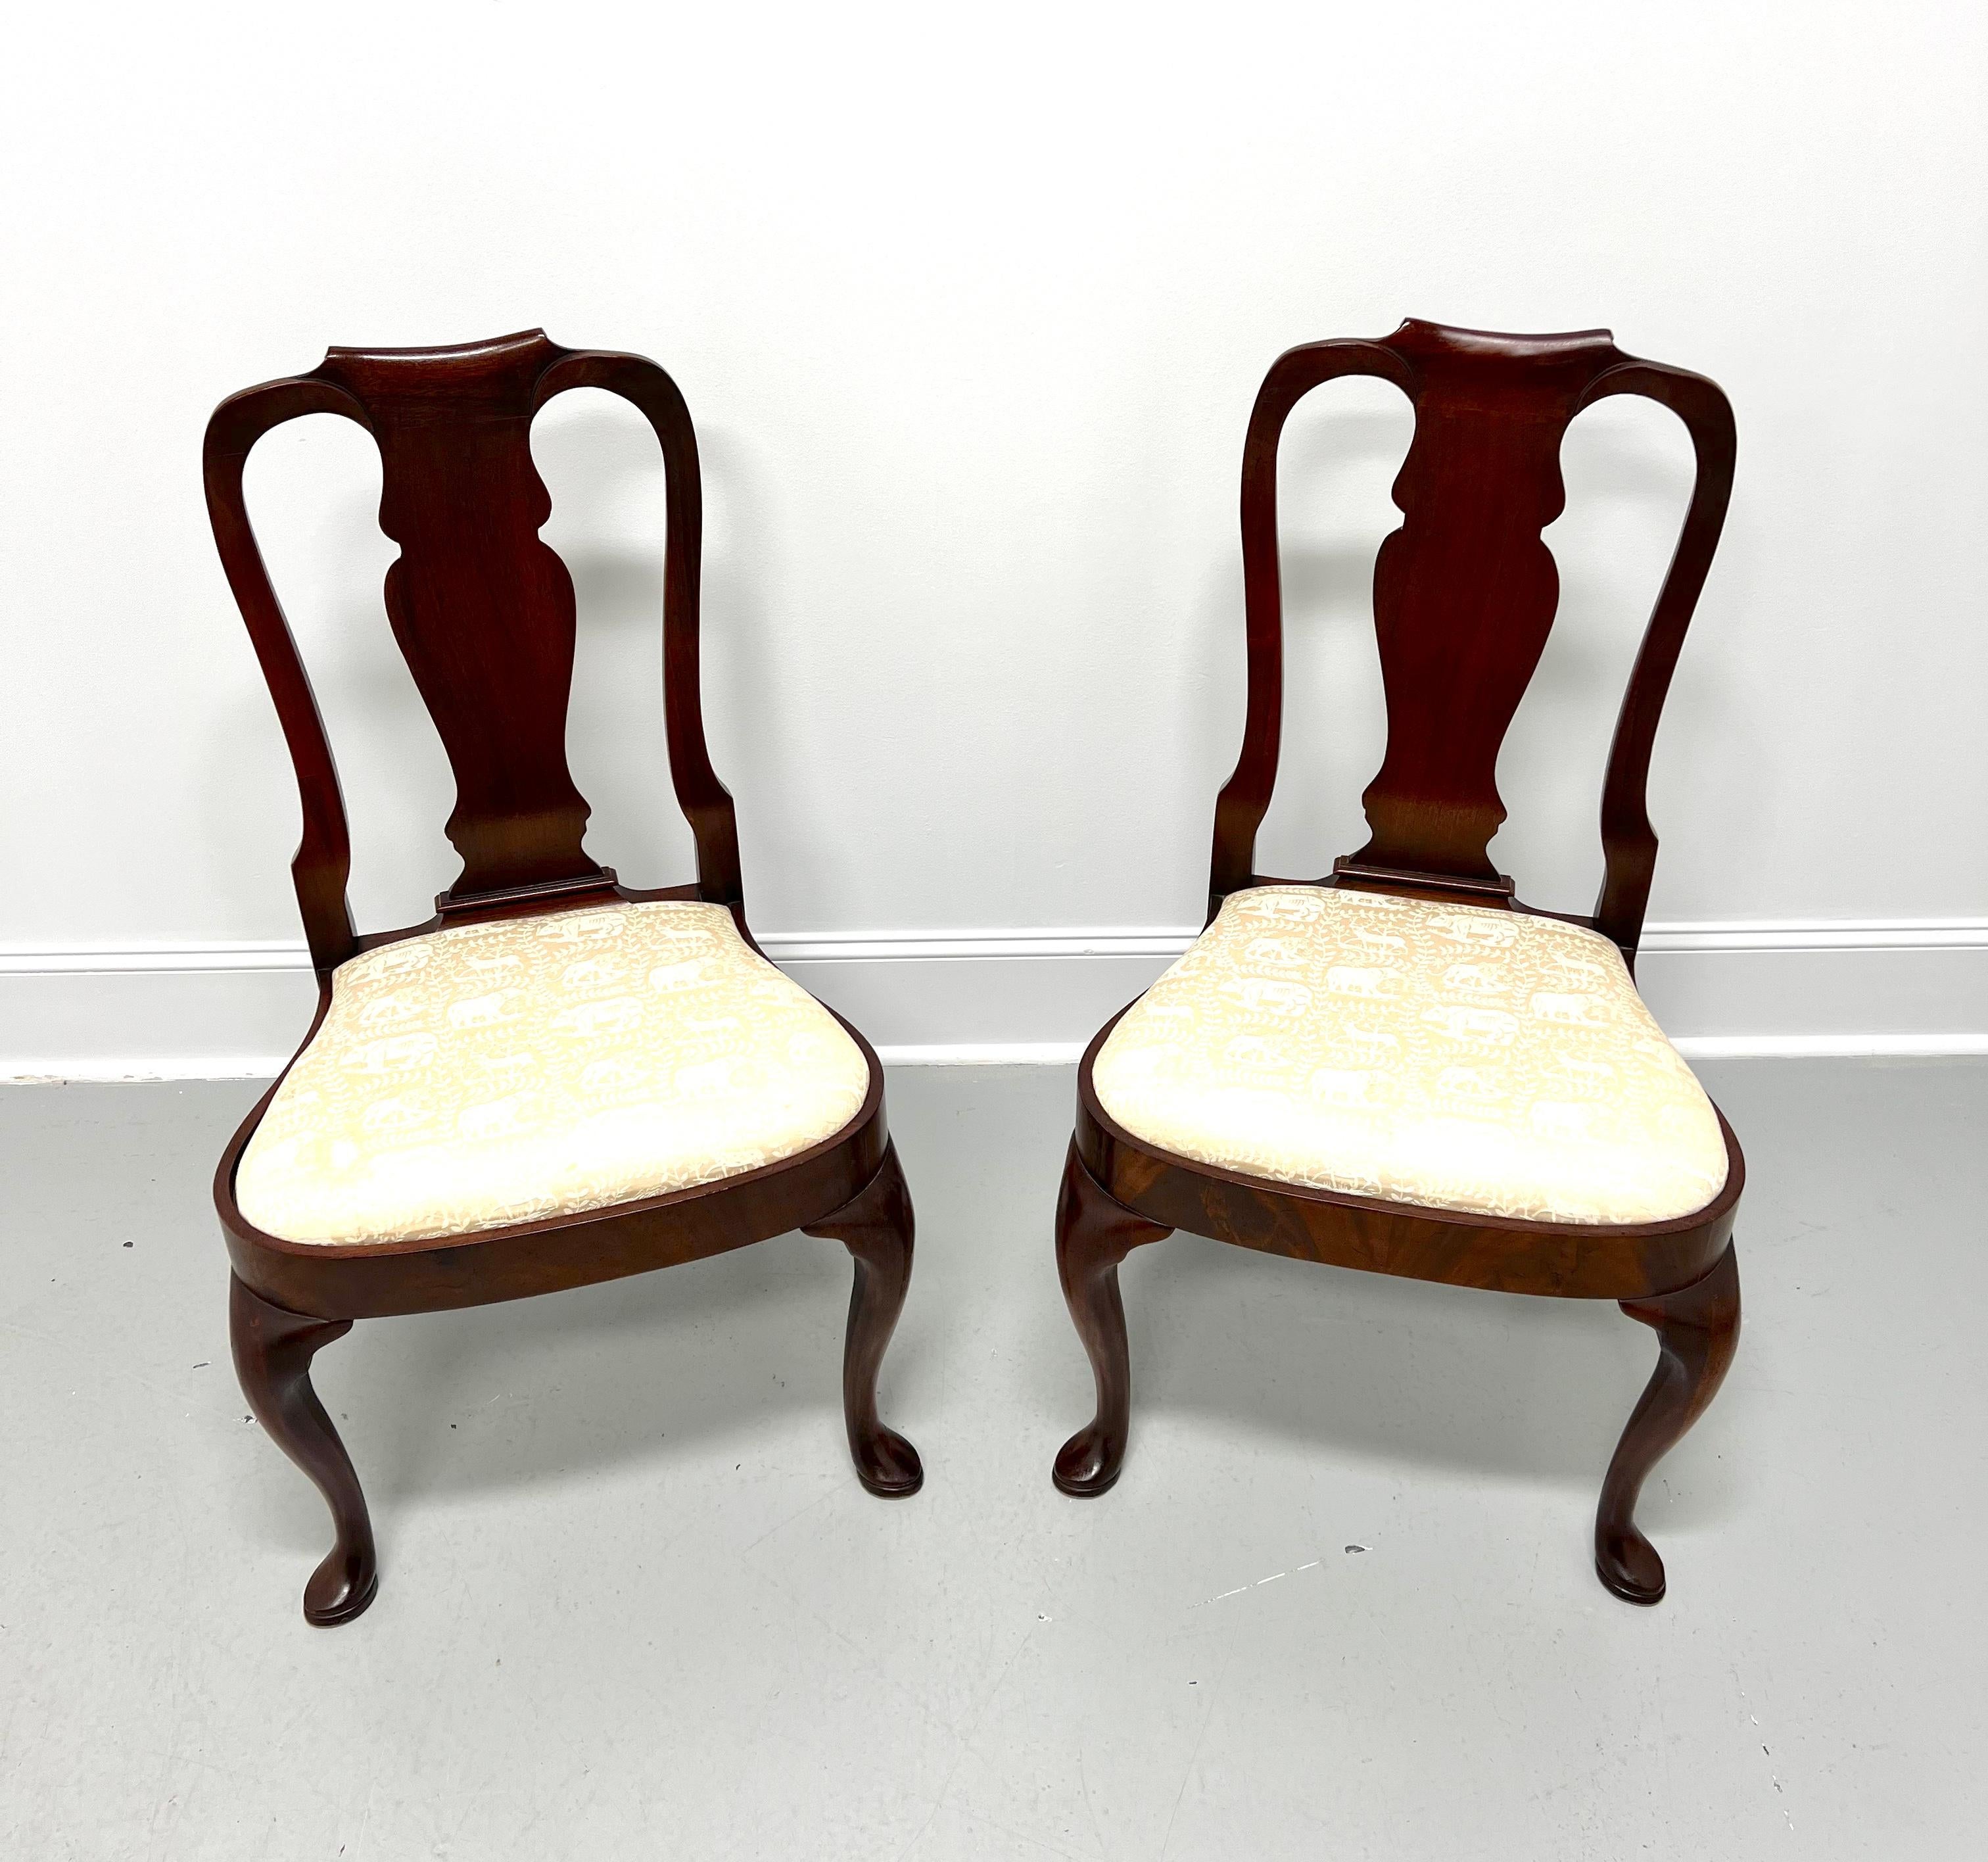 Paire de chaises latérales de salle à manger de style Queen Anne, fabriquées par Hickory Chair. En acajou, le dossier est sculpté, l'assise est recouverte d'un tissu de brocart de couleur crème, le tablier est arrondi, les pieds avant sont en